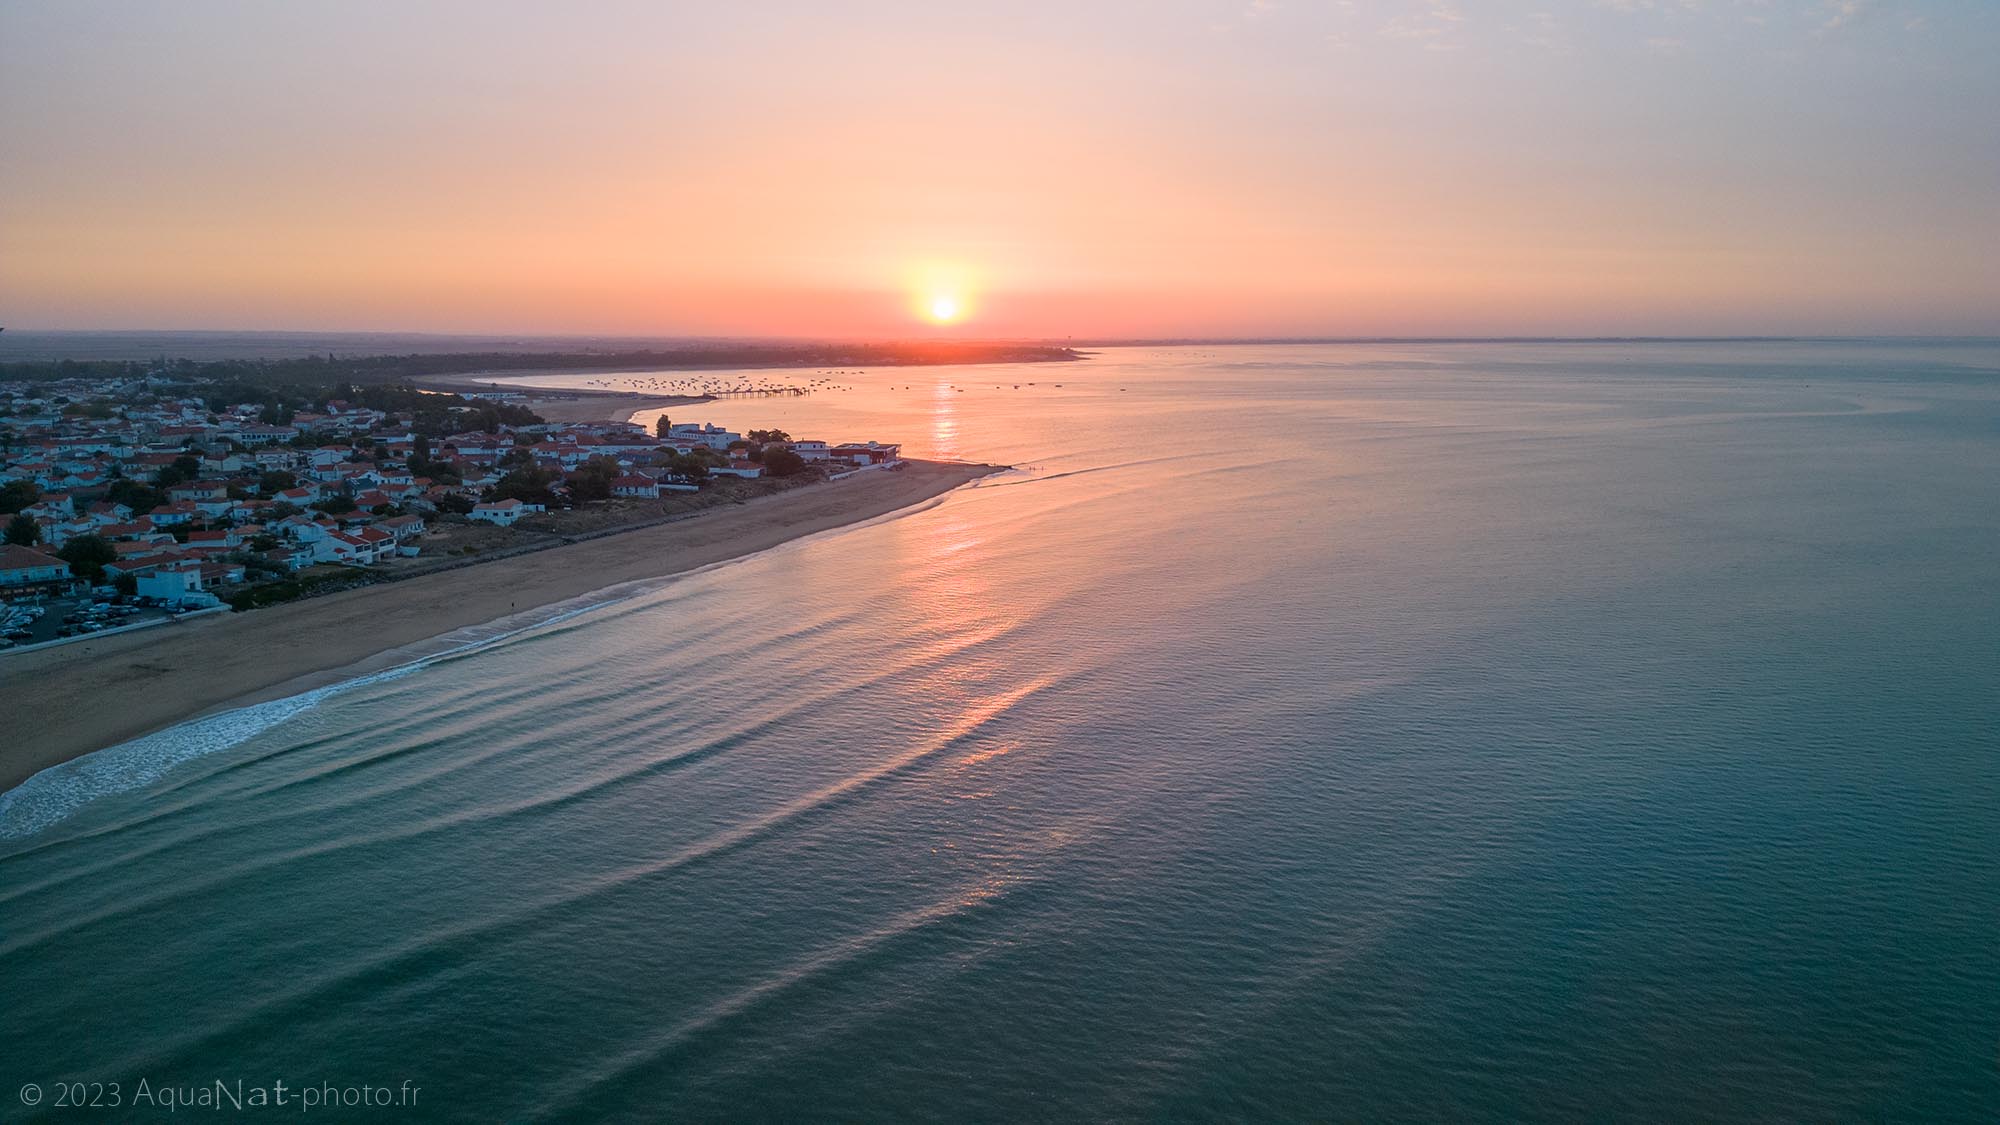 Vue aérienne du lever de soleil sur la baie de la Tranche sur mer aux couleurs pastels.